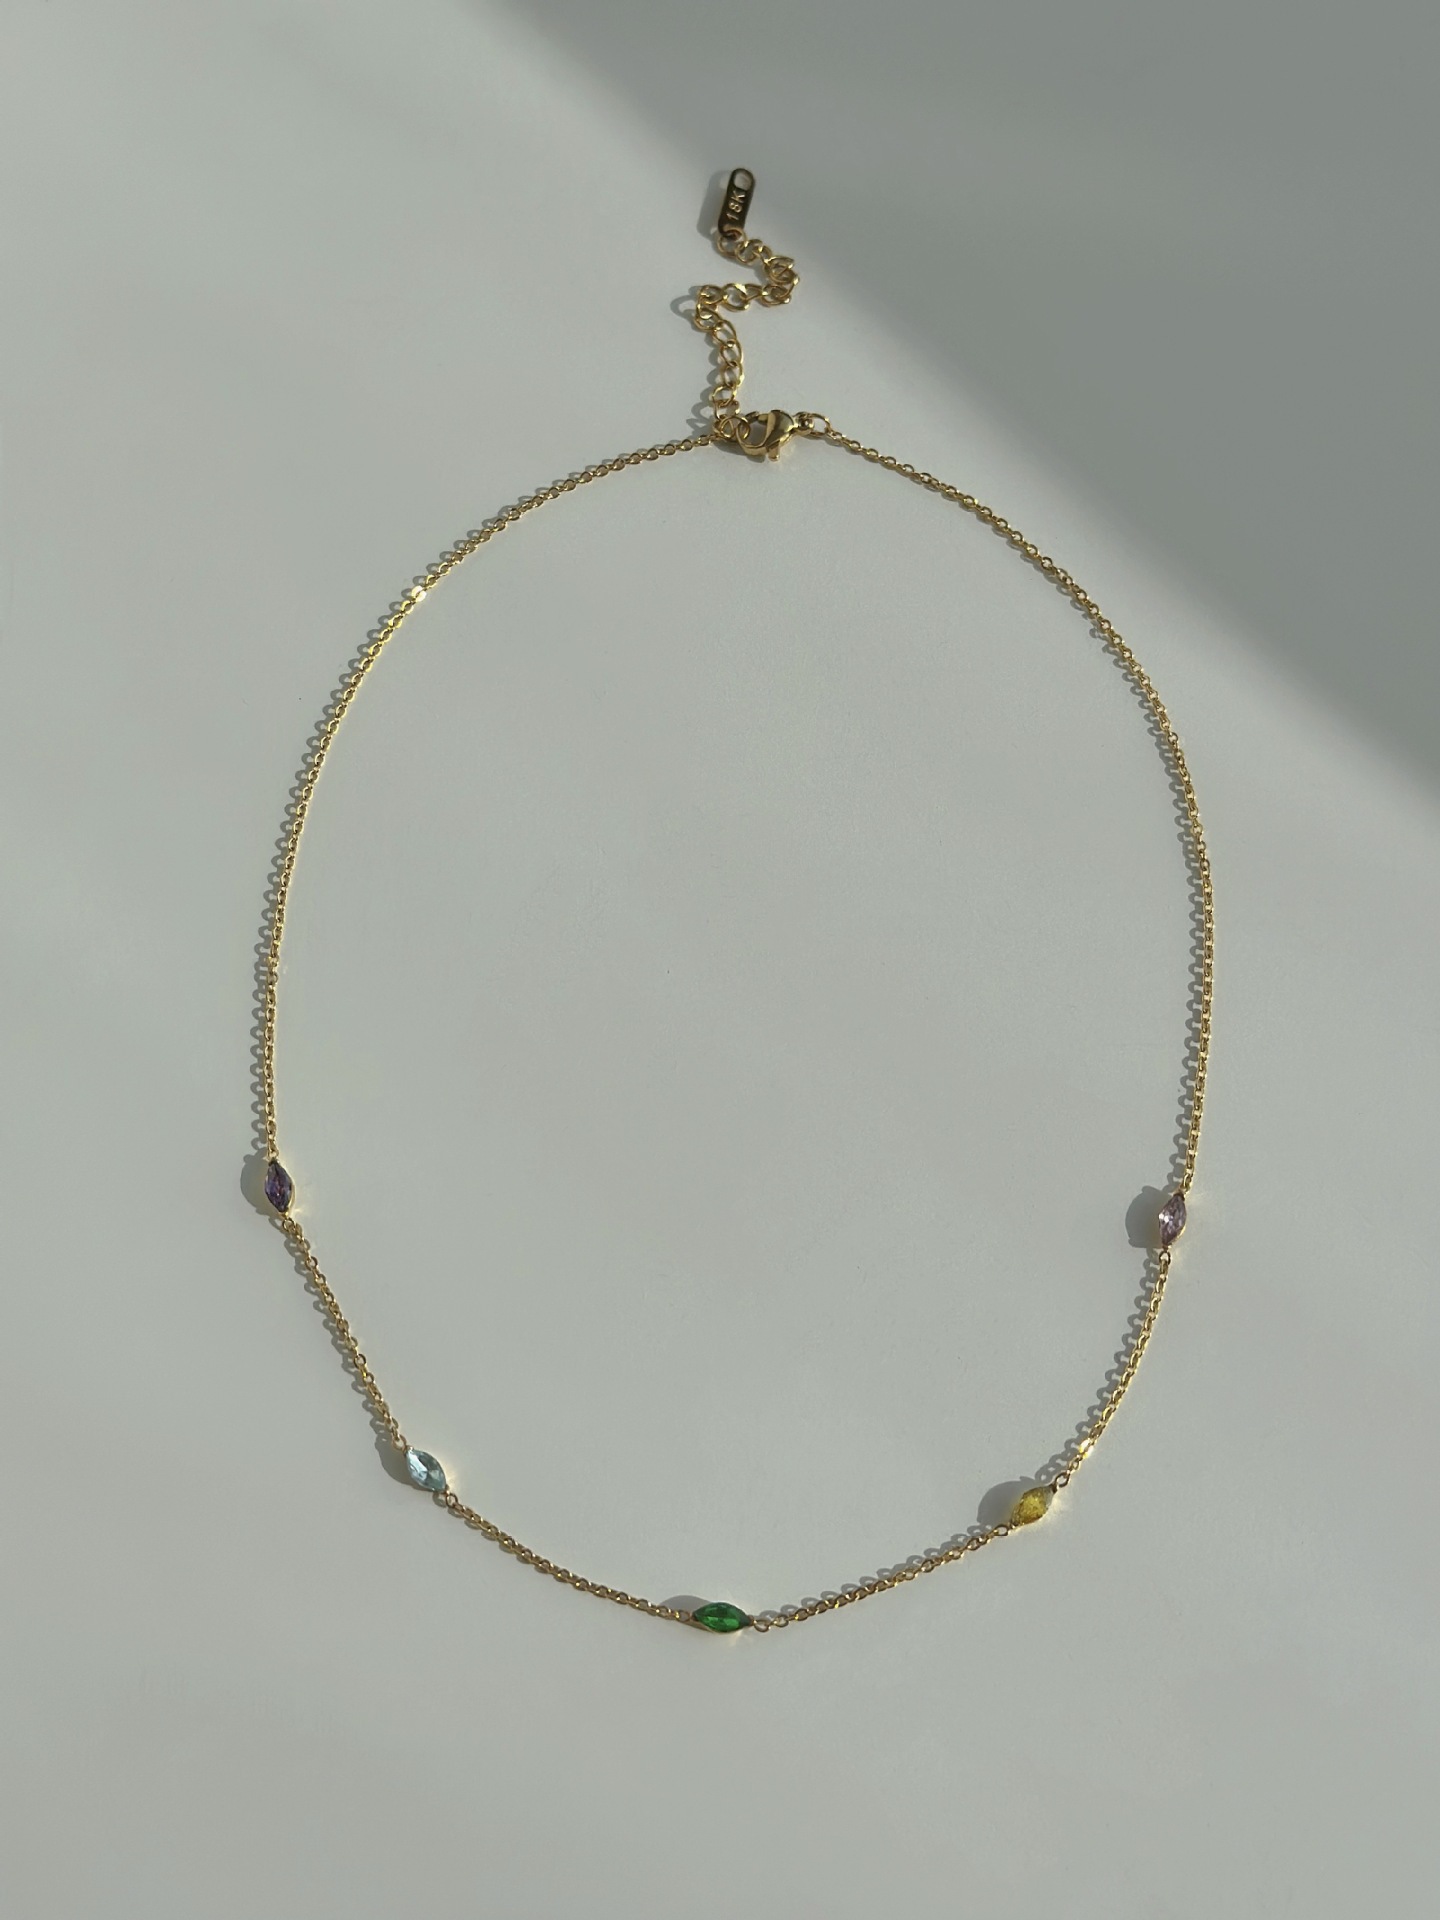 1:41x5cm necklace color zirconium